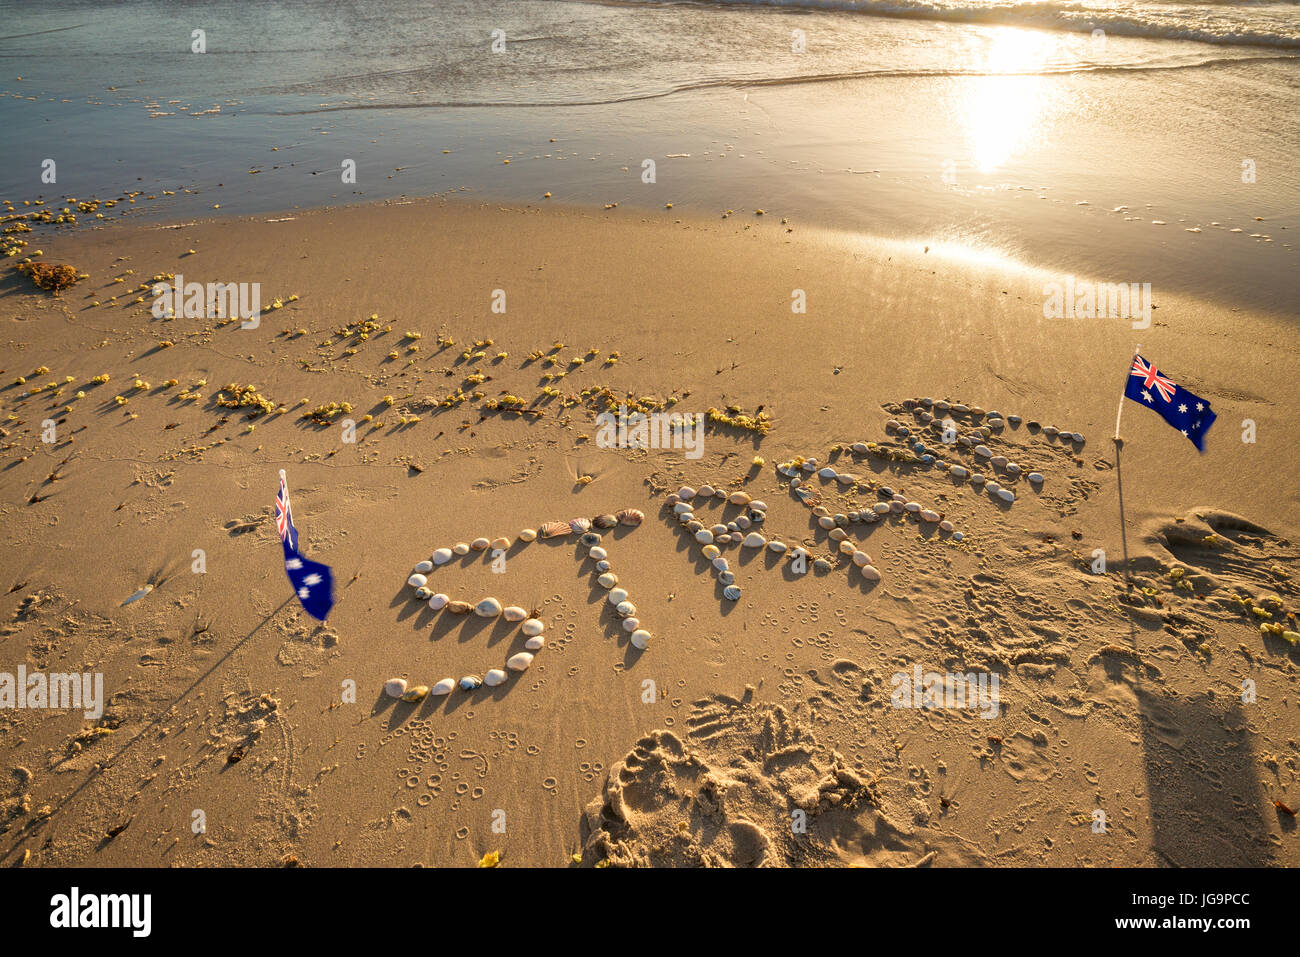 Testo Straya disegnate utilizzando conchiglie sulla sabbia. Straya è una abbreviazione di Australia Foto Stock